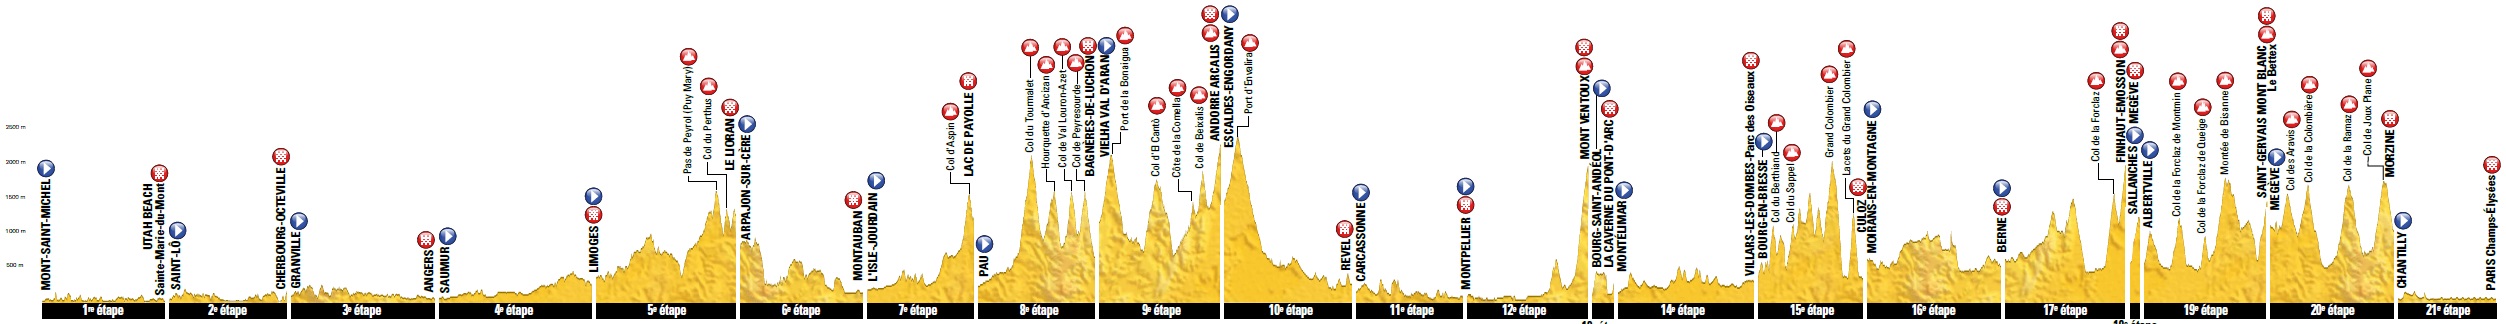 Hhenprofil Tour de France 2016, alle Etappen auf einen Blick